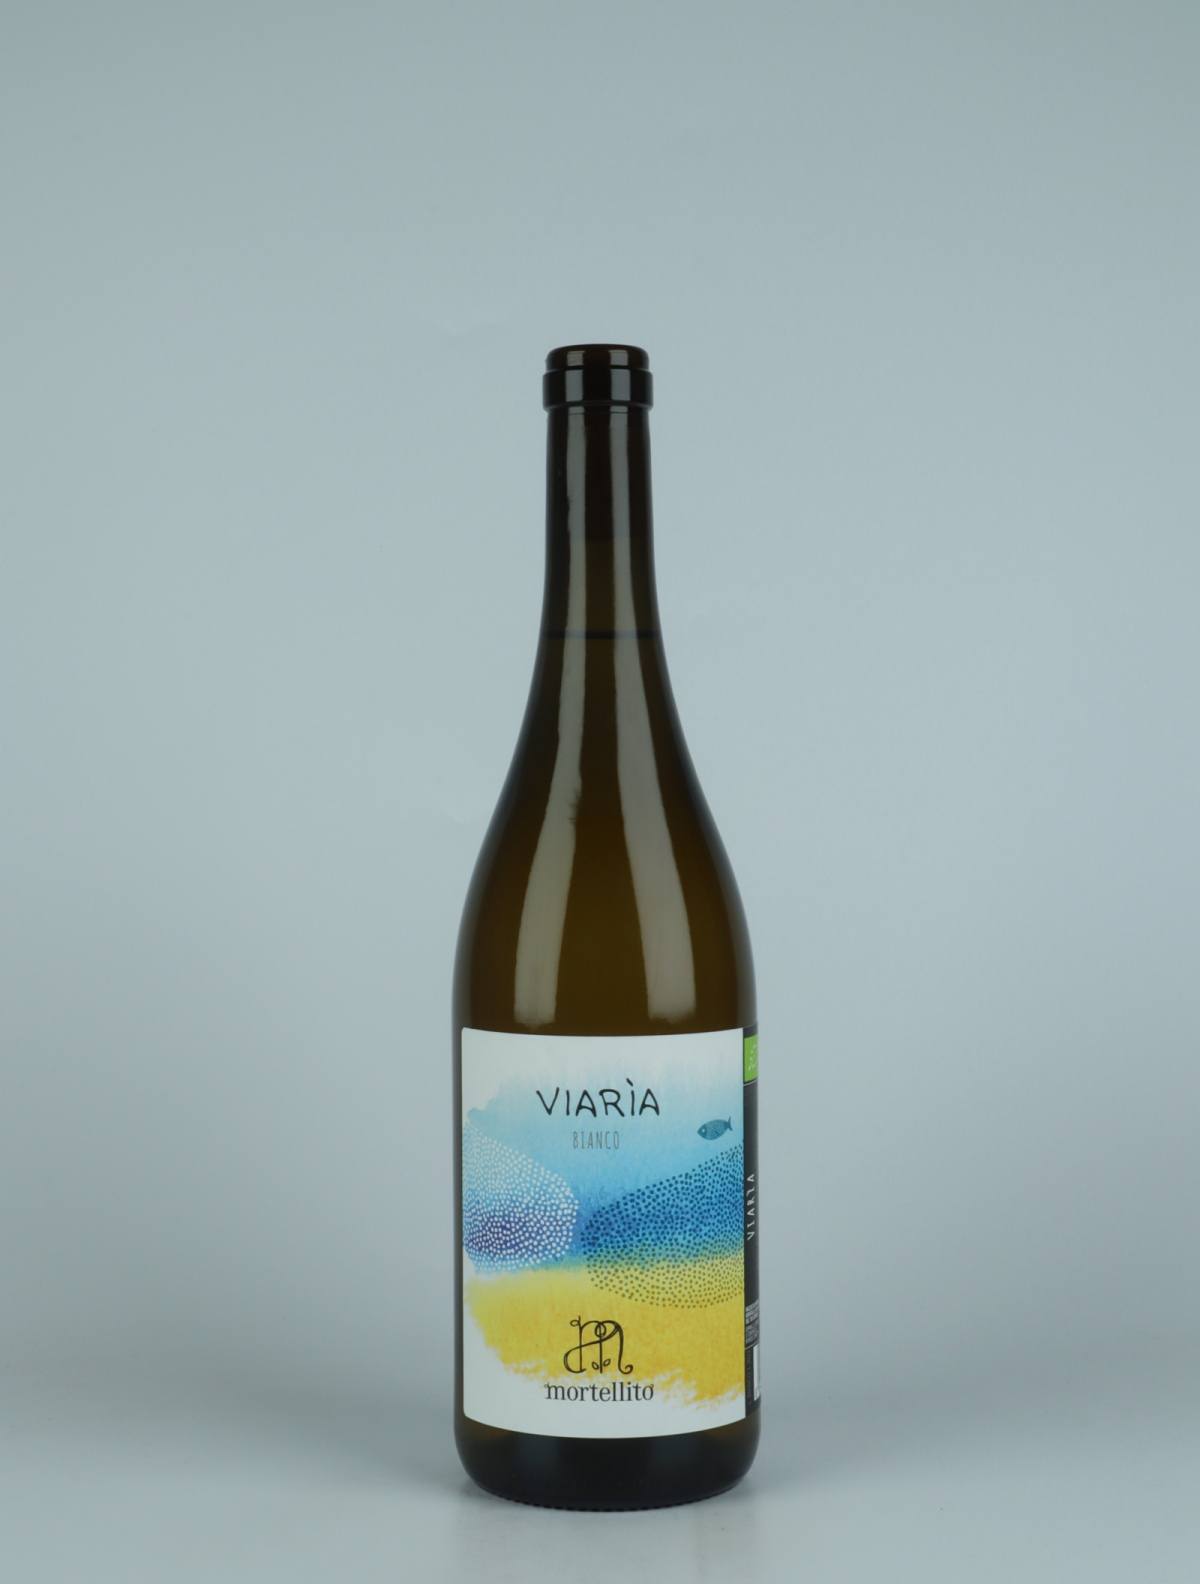 A bottle 2022 Viaria Orange wine from Il Mortellito, Sicily in Italy